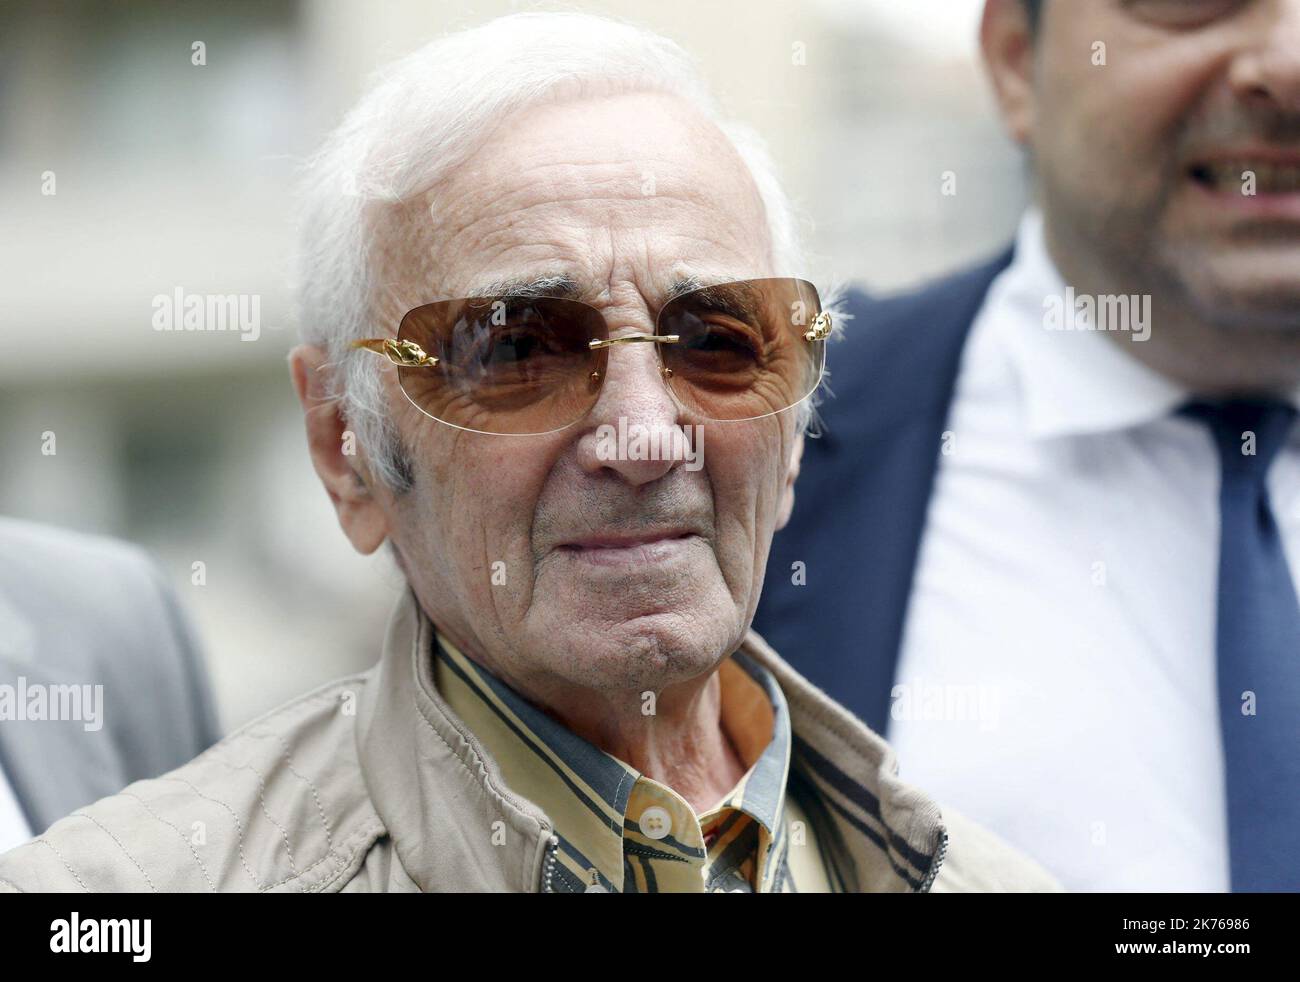 Le chanteur Charles AZNAVOUR est venu à l'ambassade d'Arménie à Marseille pour annoncer la création de la Fondation Aznavour. Selon un porte-parole, le chanteur et compositeur français Charles Aznavour est décédé à 94 ans après une carrière de plus de 80 ans. L'interprète français et arménien a vendu plus de 180 millions de disques. Banque D'Images